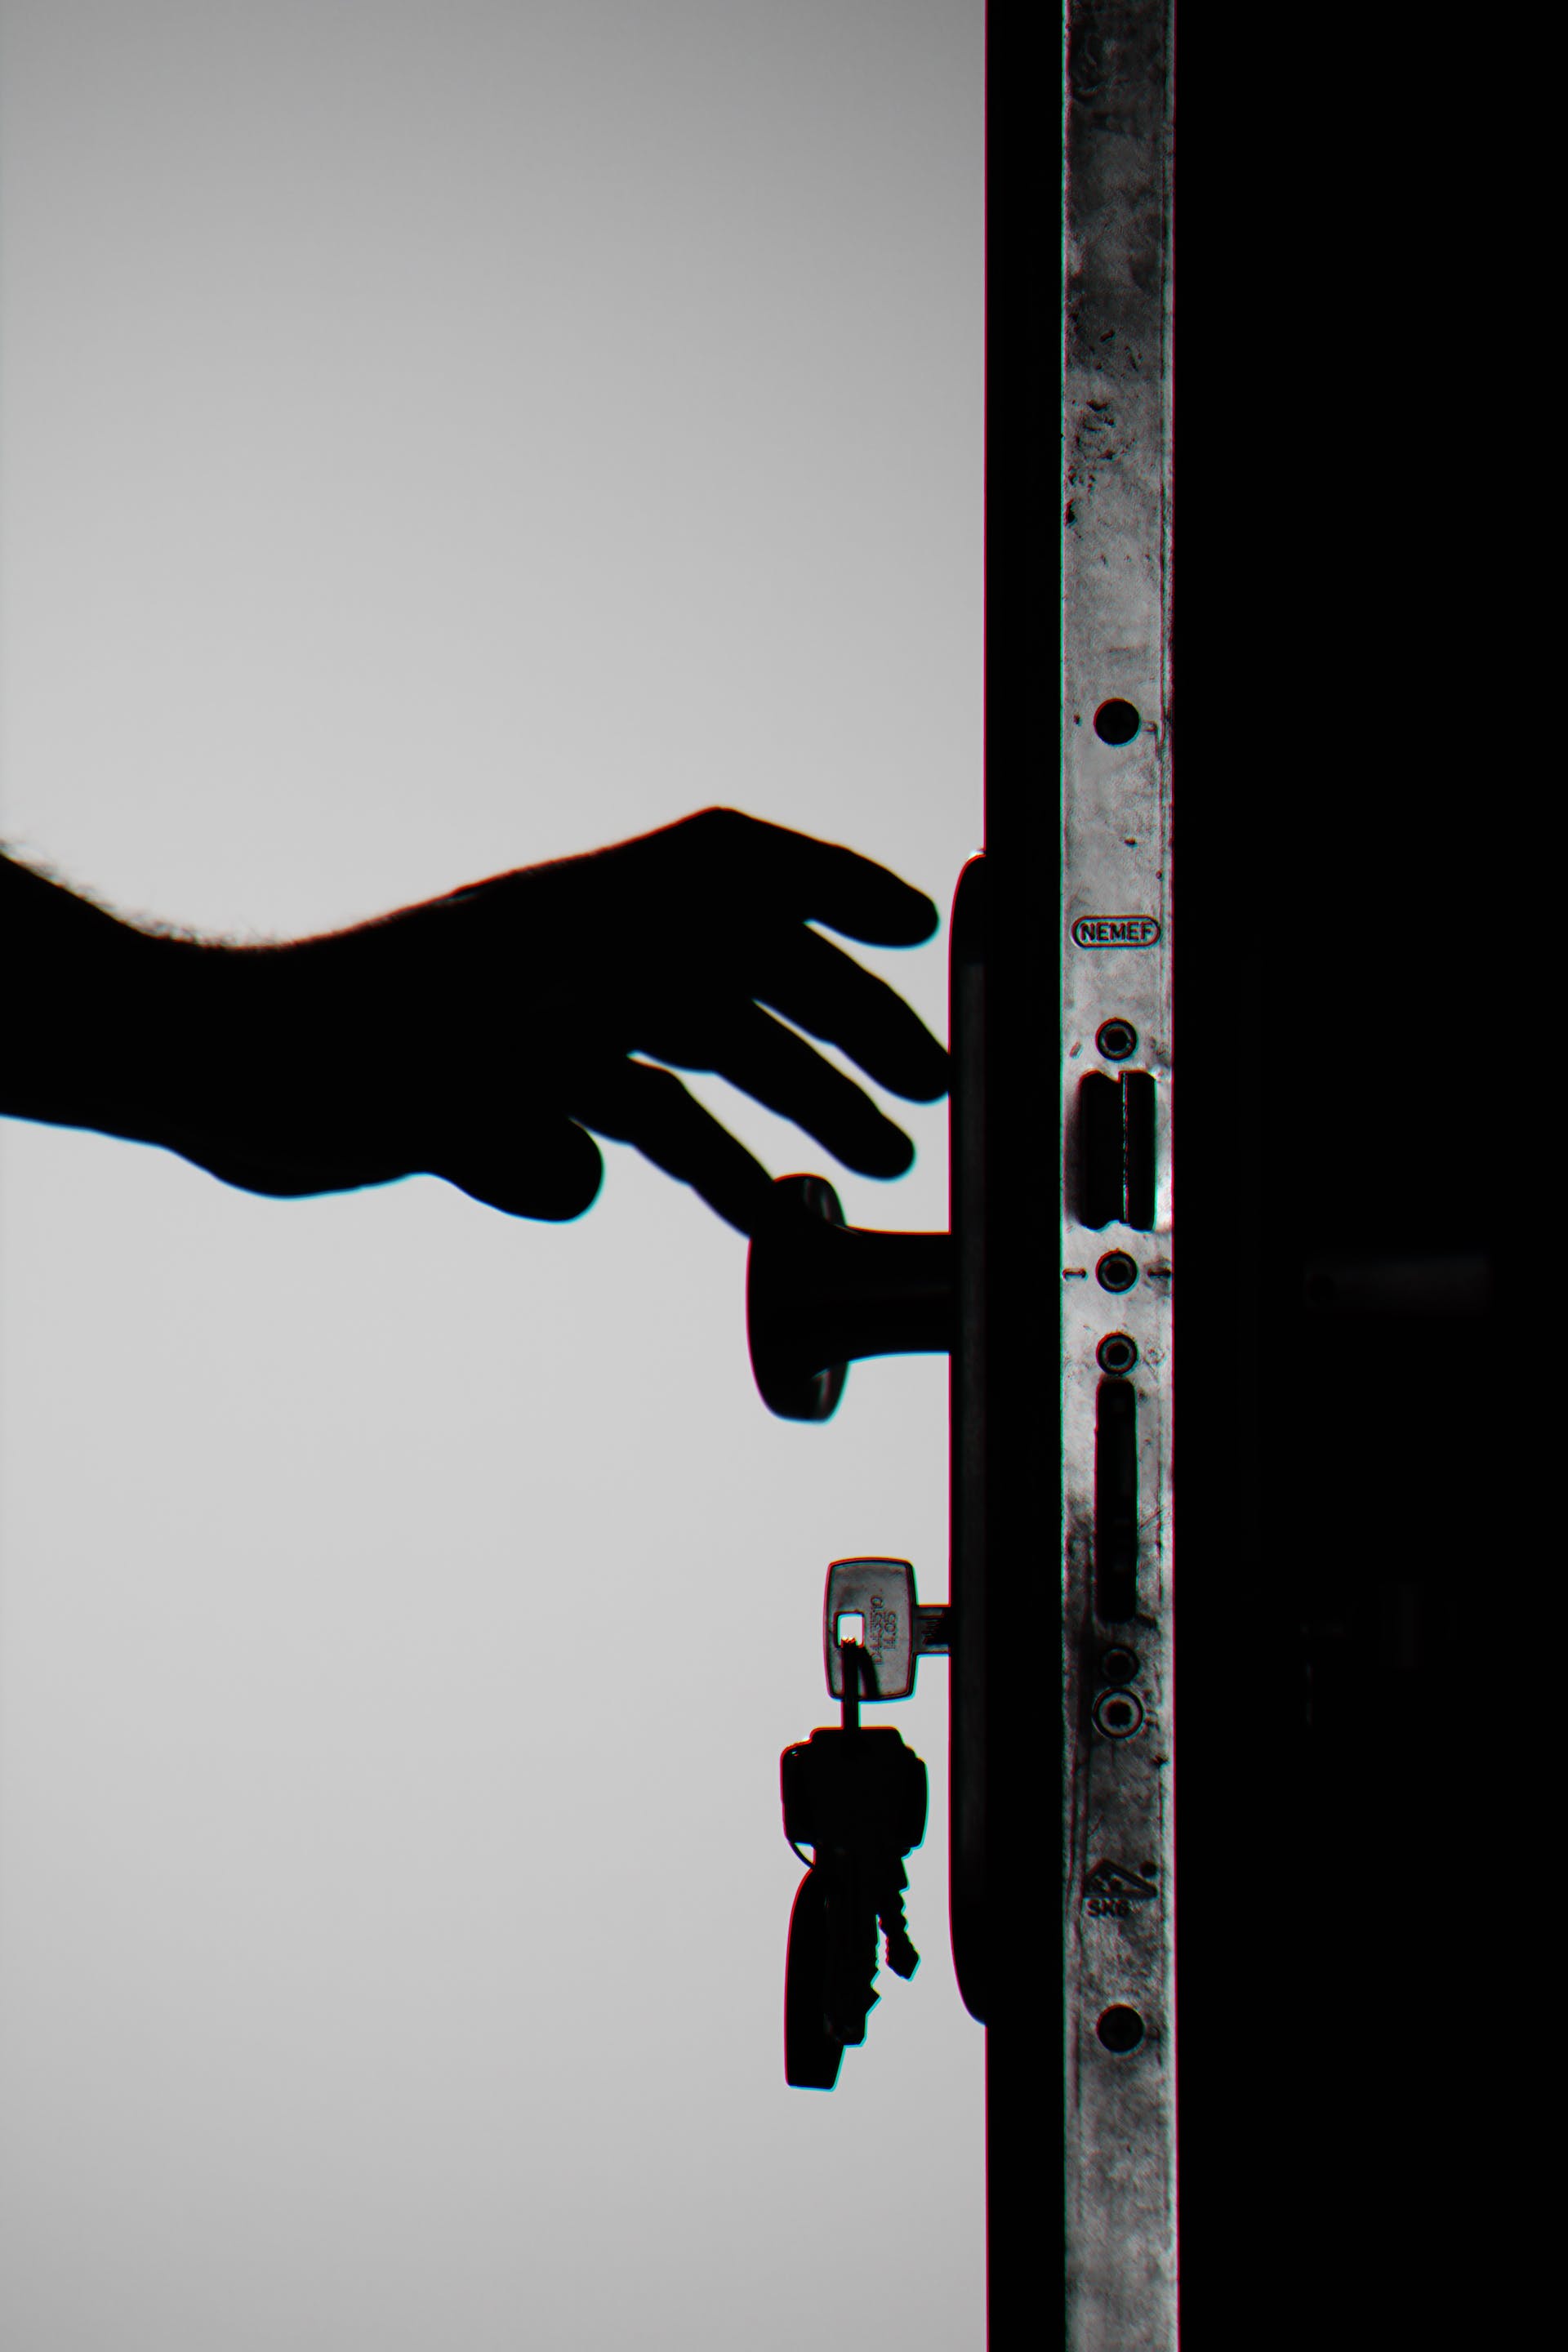 A person's hand near a doorknob | Source: Pexels